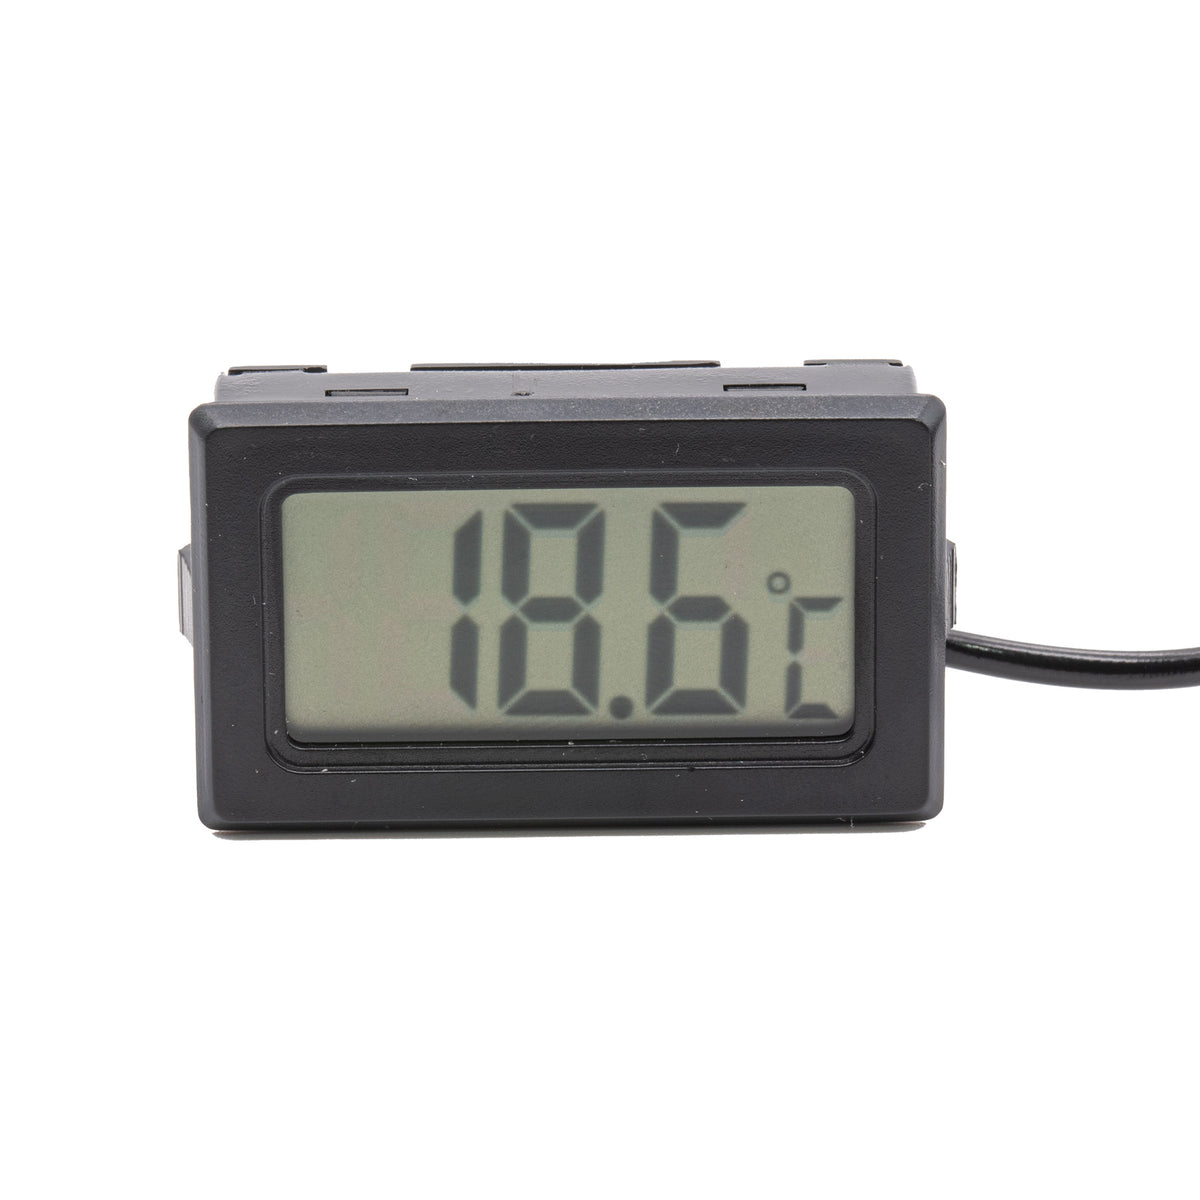 Klapp-Thermometer mit Edelstahl-Fühler und Schnellaktualisierung